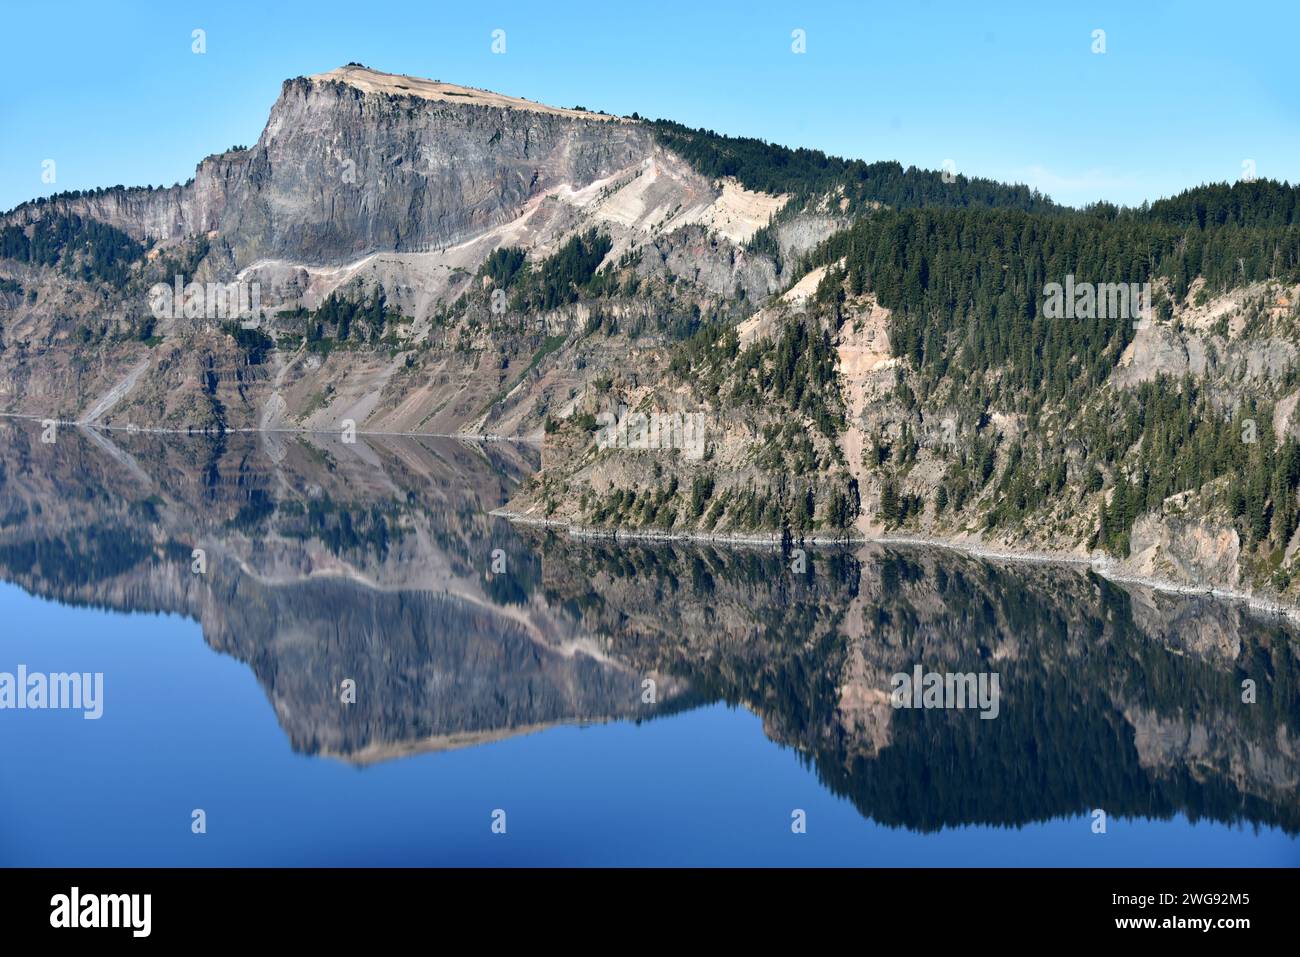 La costa se refleja a la perfección en Crater Lake, Parque Nacional Crater Lake, en Oregón. Acantilados empinados y cielo azul se reflejan. Foto de stock